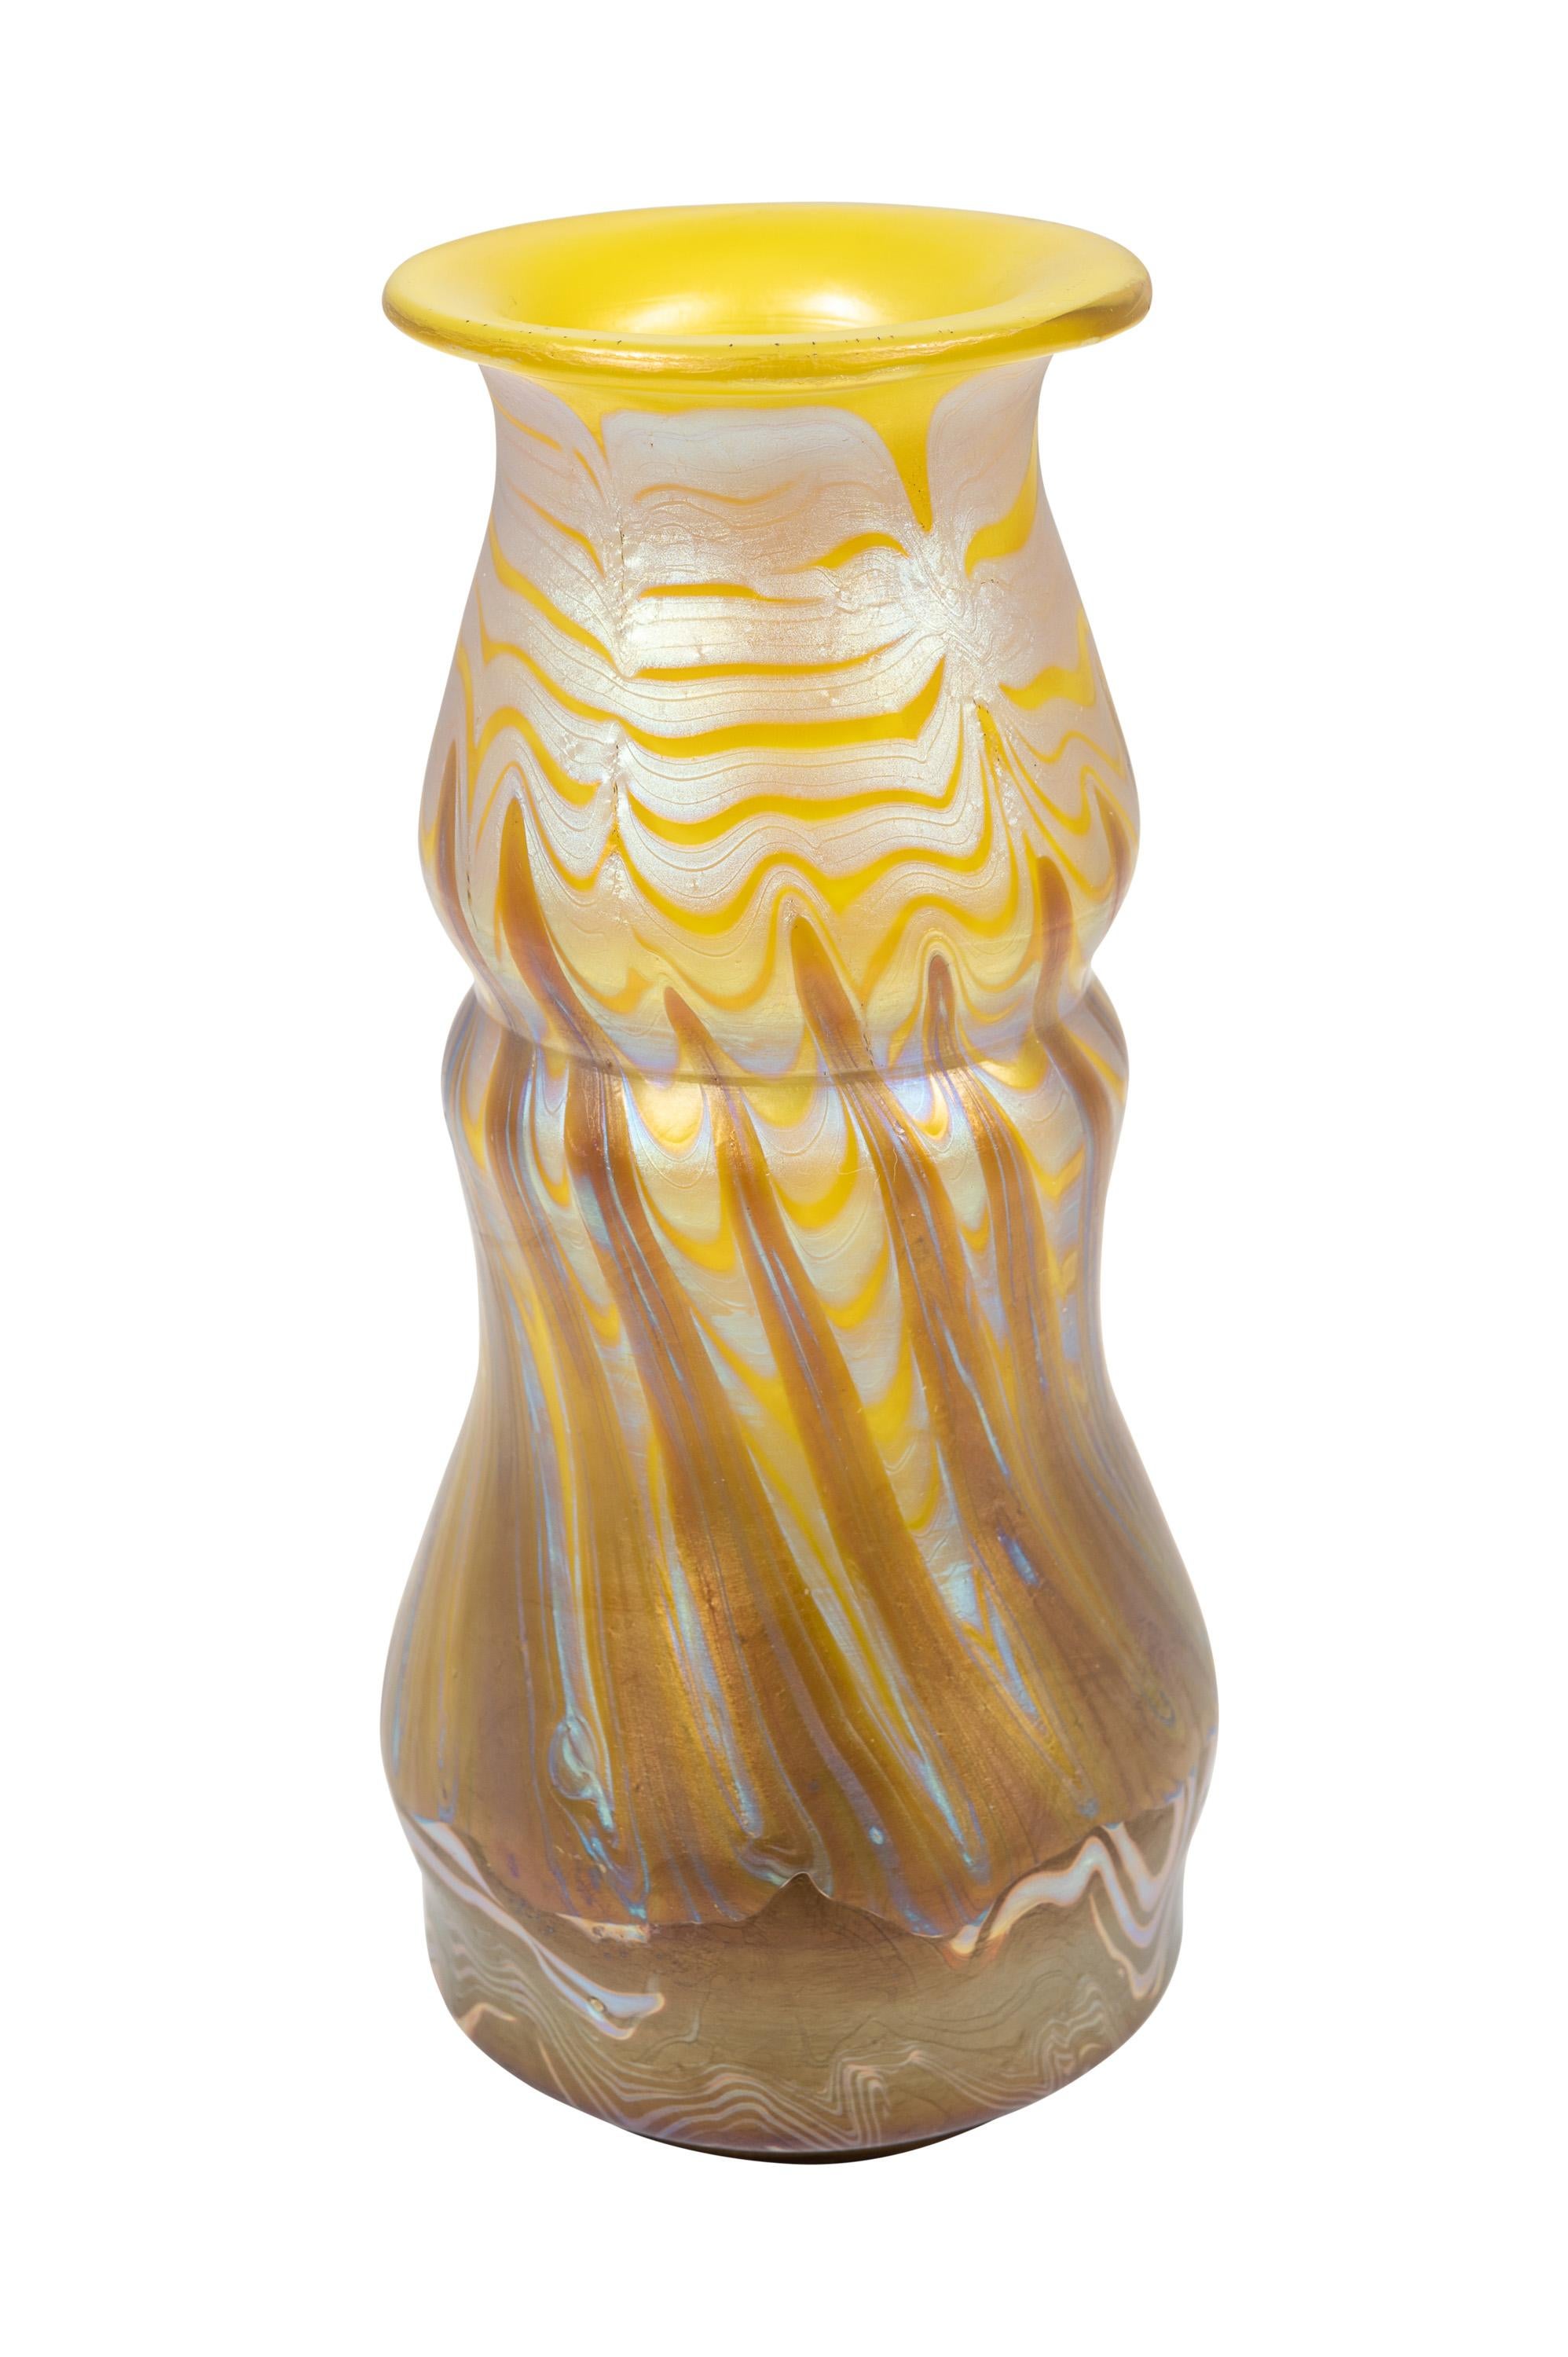 Vase, Johann Loetz Witwe, Dekor Phenomen Genre 356, um 1900, signiert

Technik: Glas, formgeblasen und frei geformt, reduziert und schillernd

Vase signiert 